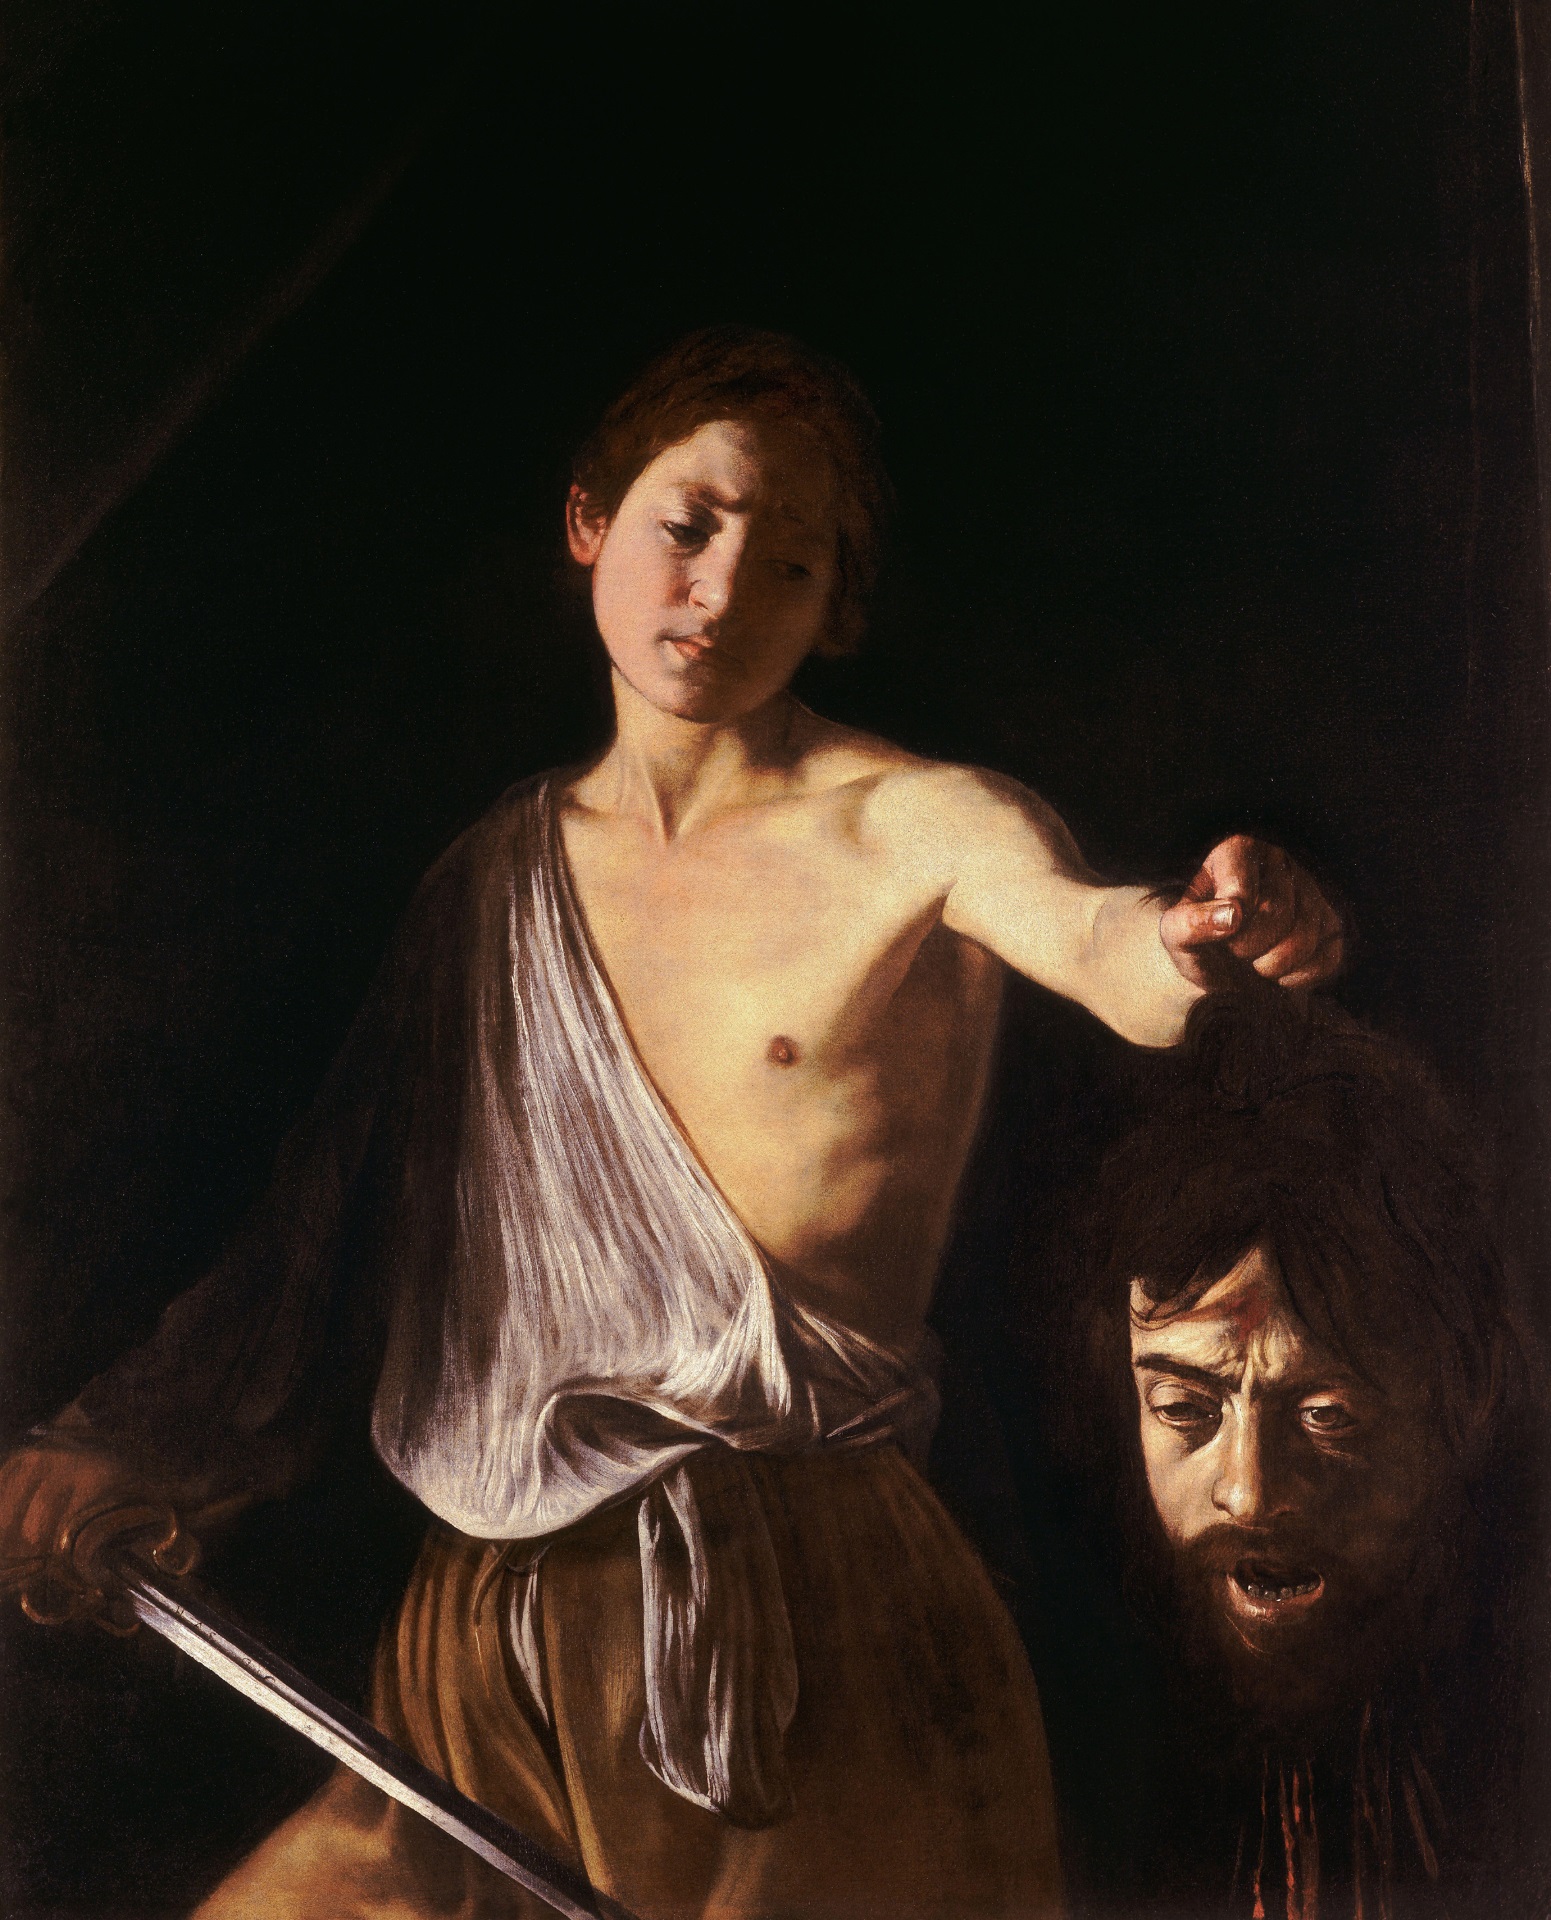 Caravaggio - David with the Head of Goliath 1610